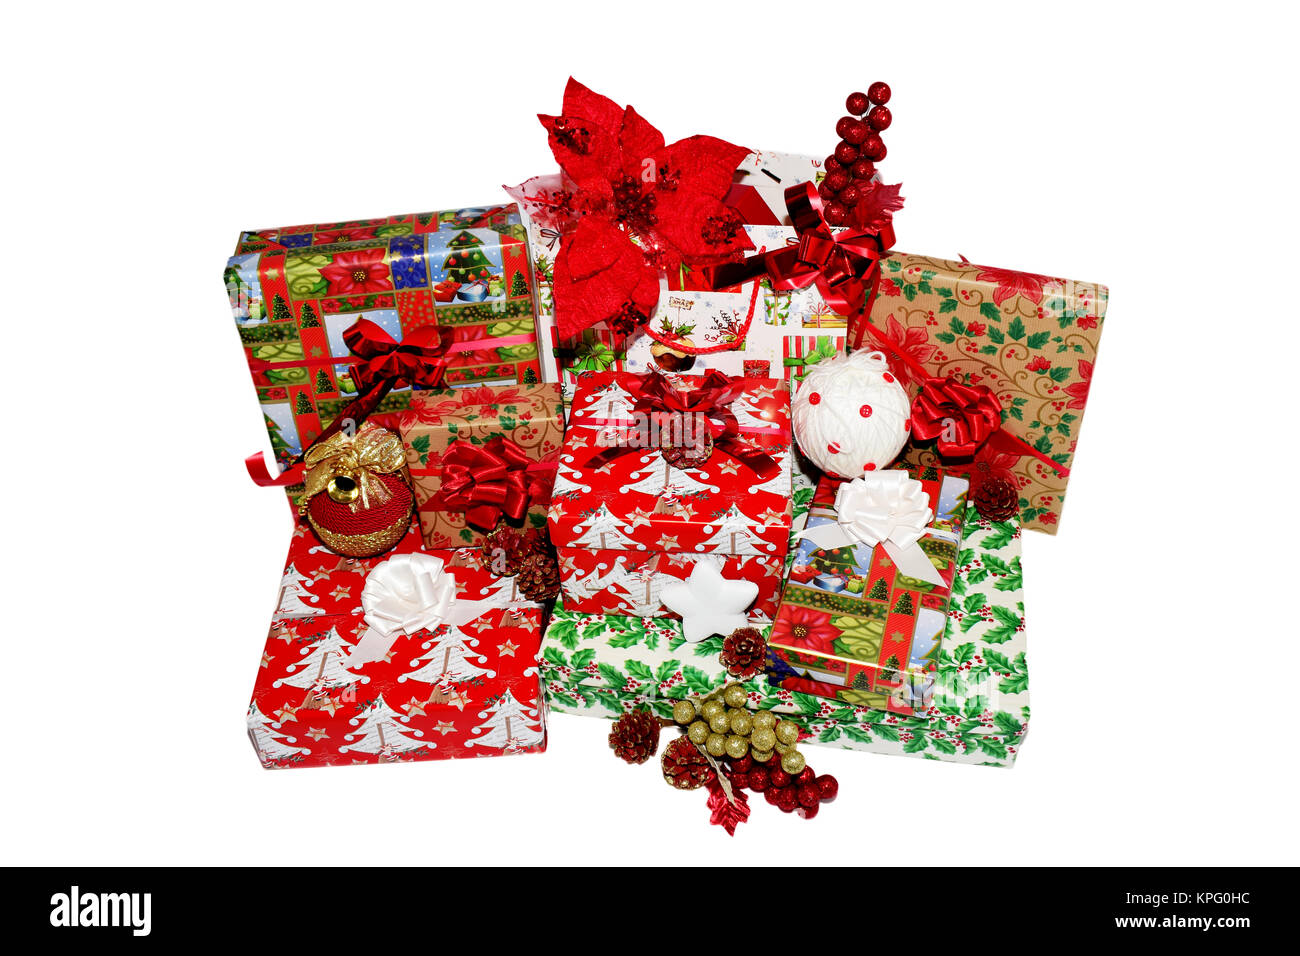 Cadeaux de Noël dans des boîtes et sacs, enveloppés dans du papier à thème. Avec des décorations de Noël, fleurs de décoration rouge et blanc Golden globes et des pommes de pin Banque D'Images